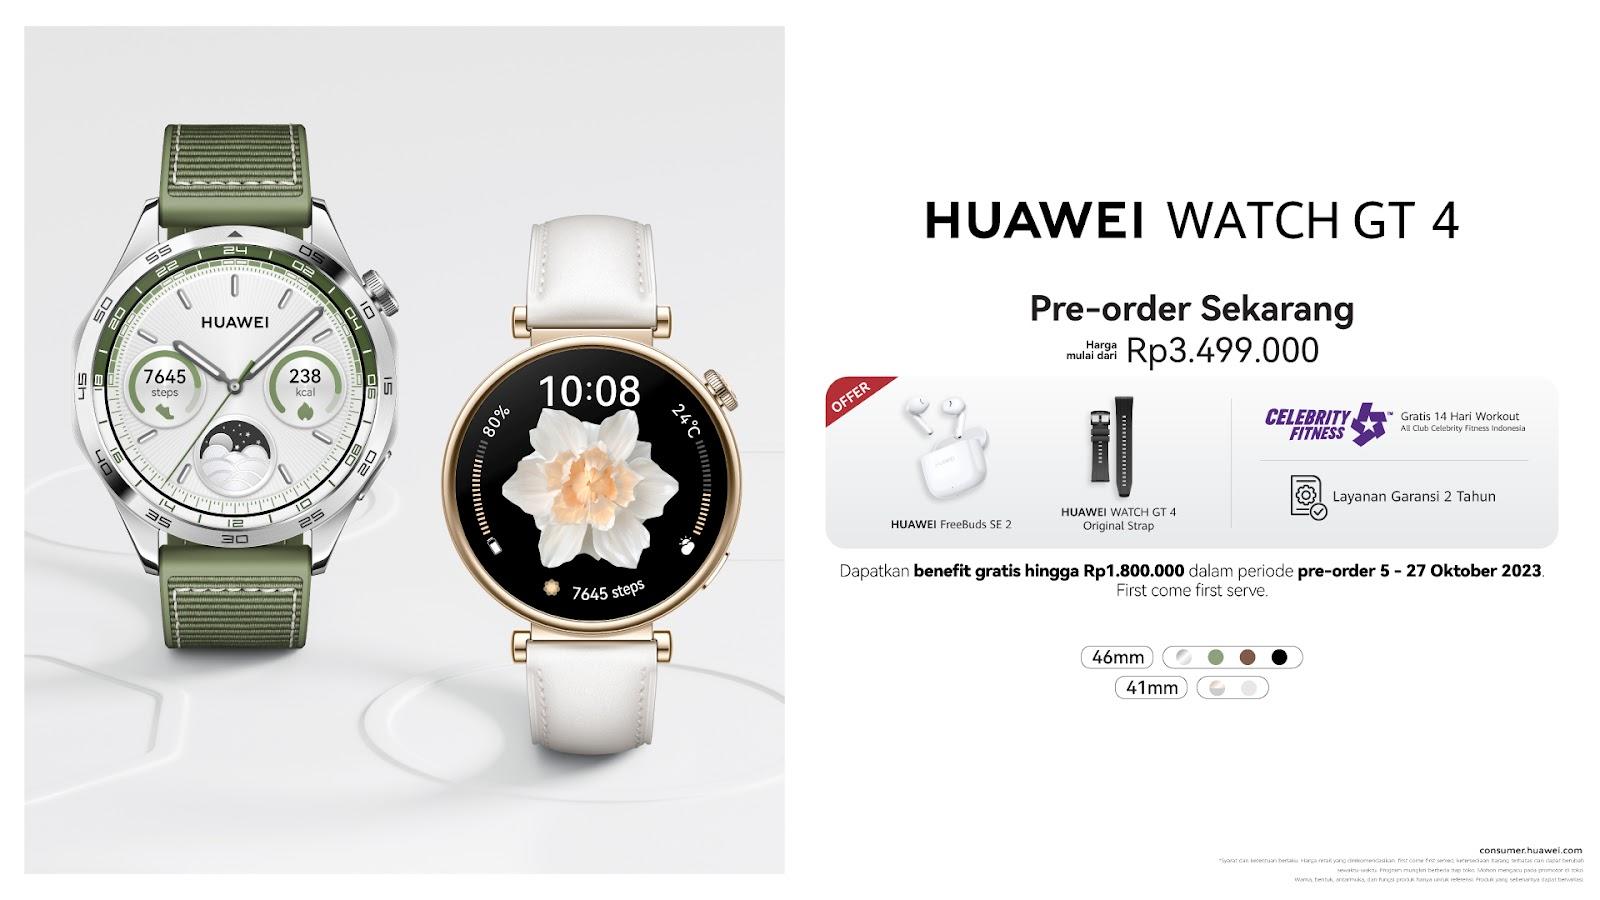 Informasi pre-order dan promo menarik pembelian HUAWEI WATCH GT 4